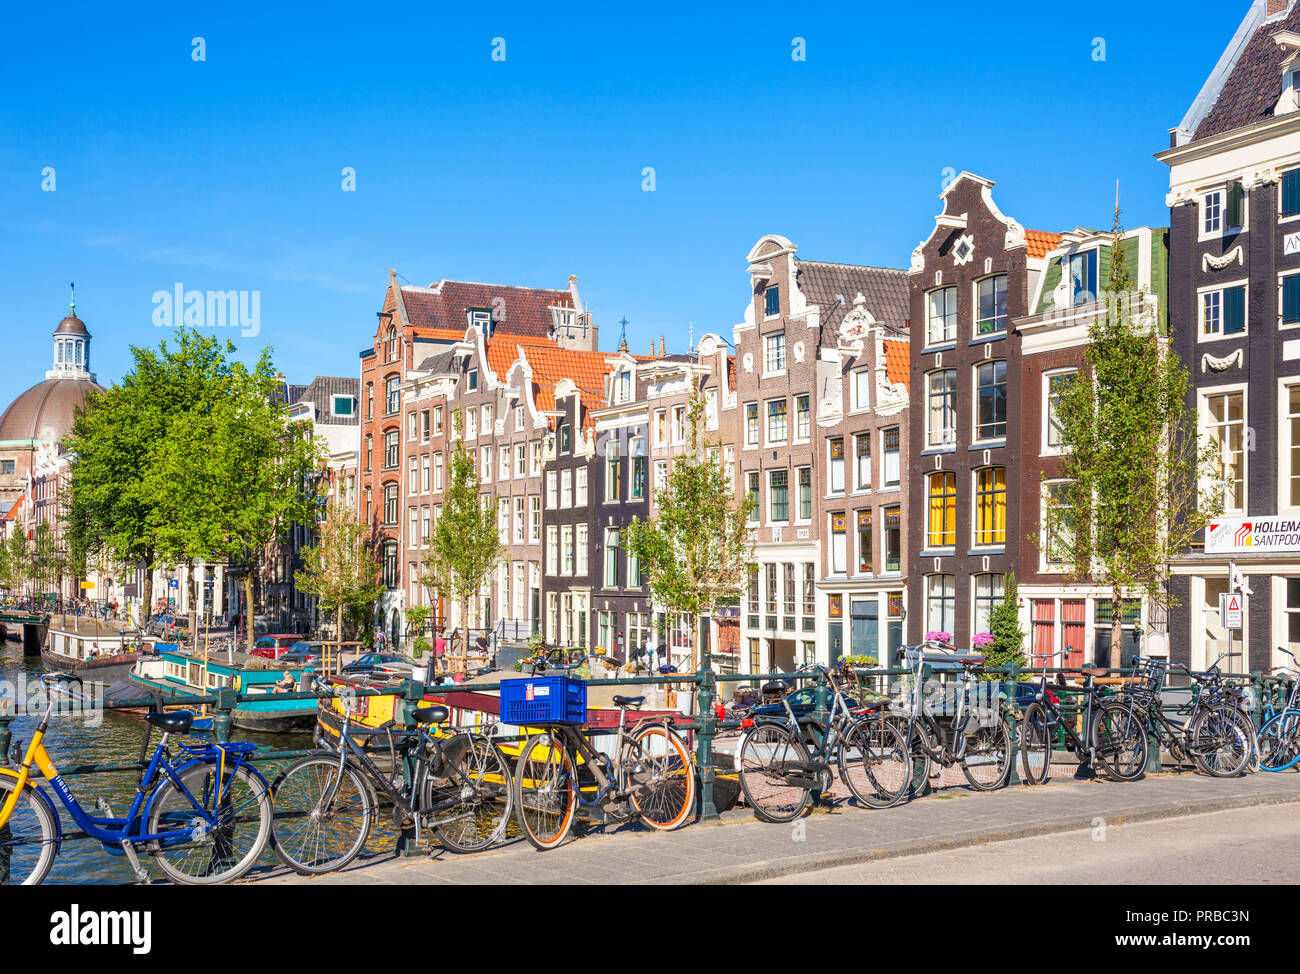 Maisons d'Amsterdam et des vélos sur un canal à Amsterdam Singel Blauwburgwal Pont sur canal Singel Amsterdam location appuyée sur les rails l'Union européenne d'Amsterdam Banque D'Images